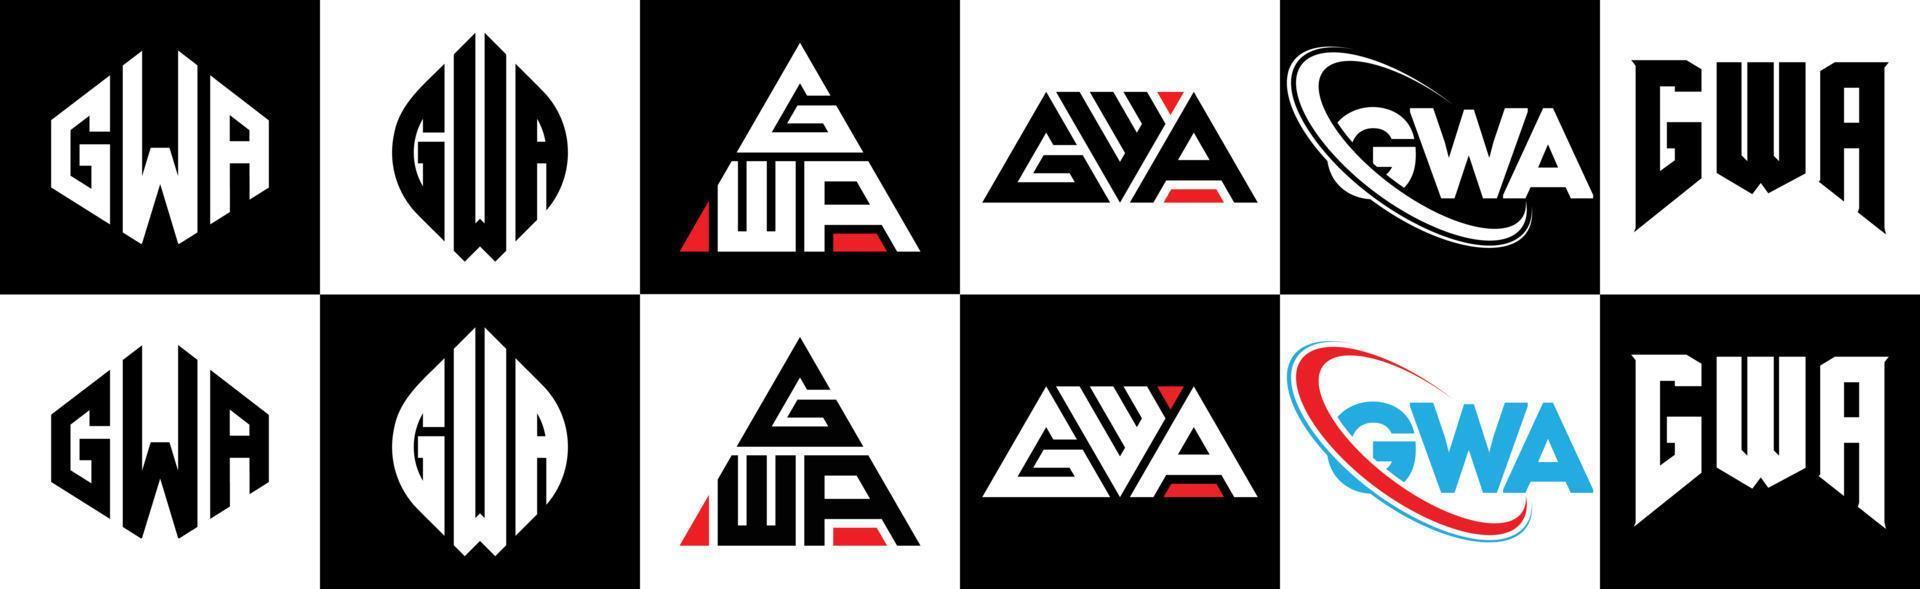 Diseño de logotipo de letra gwa en seis estilos. gwa polígono, círculo, triángulo, hexágono, estilo plano y simple con logotipo de letra de variación de color blanco y negro en una mesa de trabajo. logotipo minimalista y clásico de gwa vector